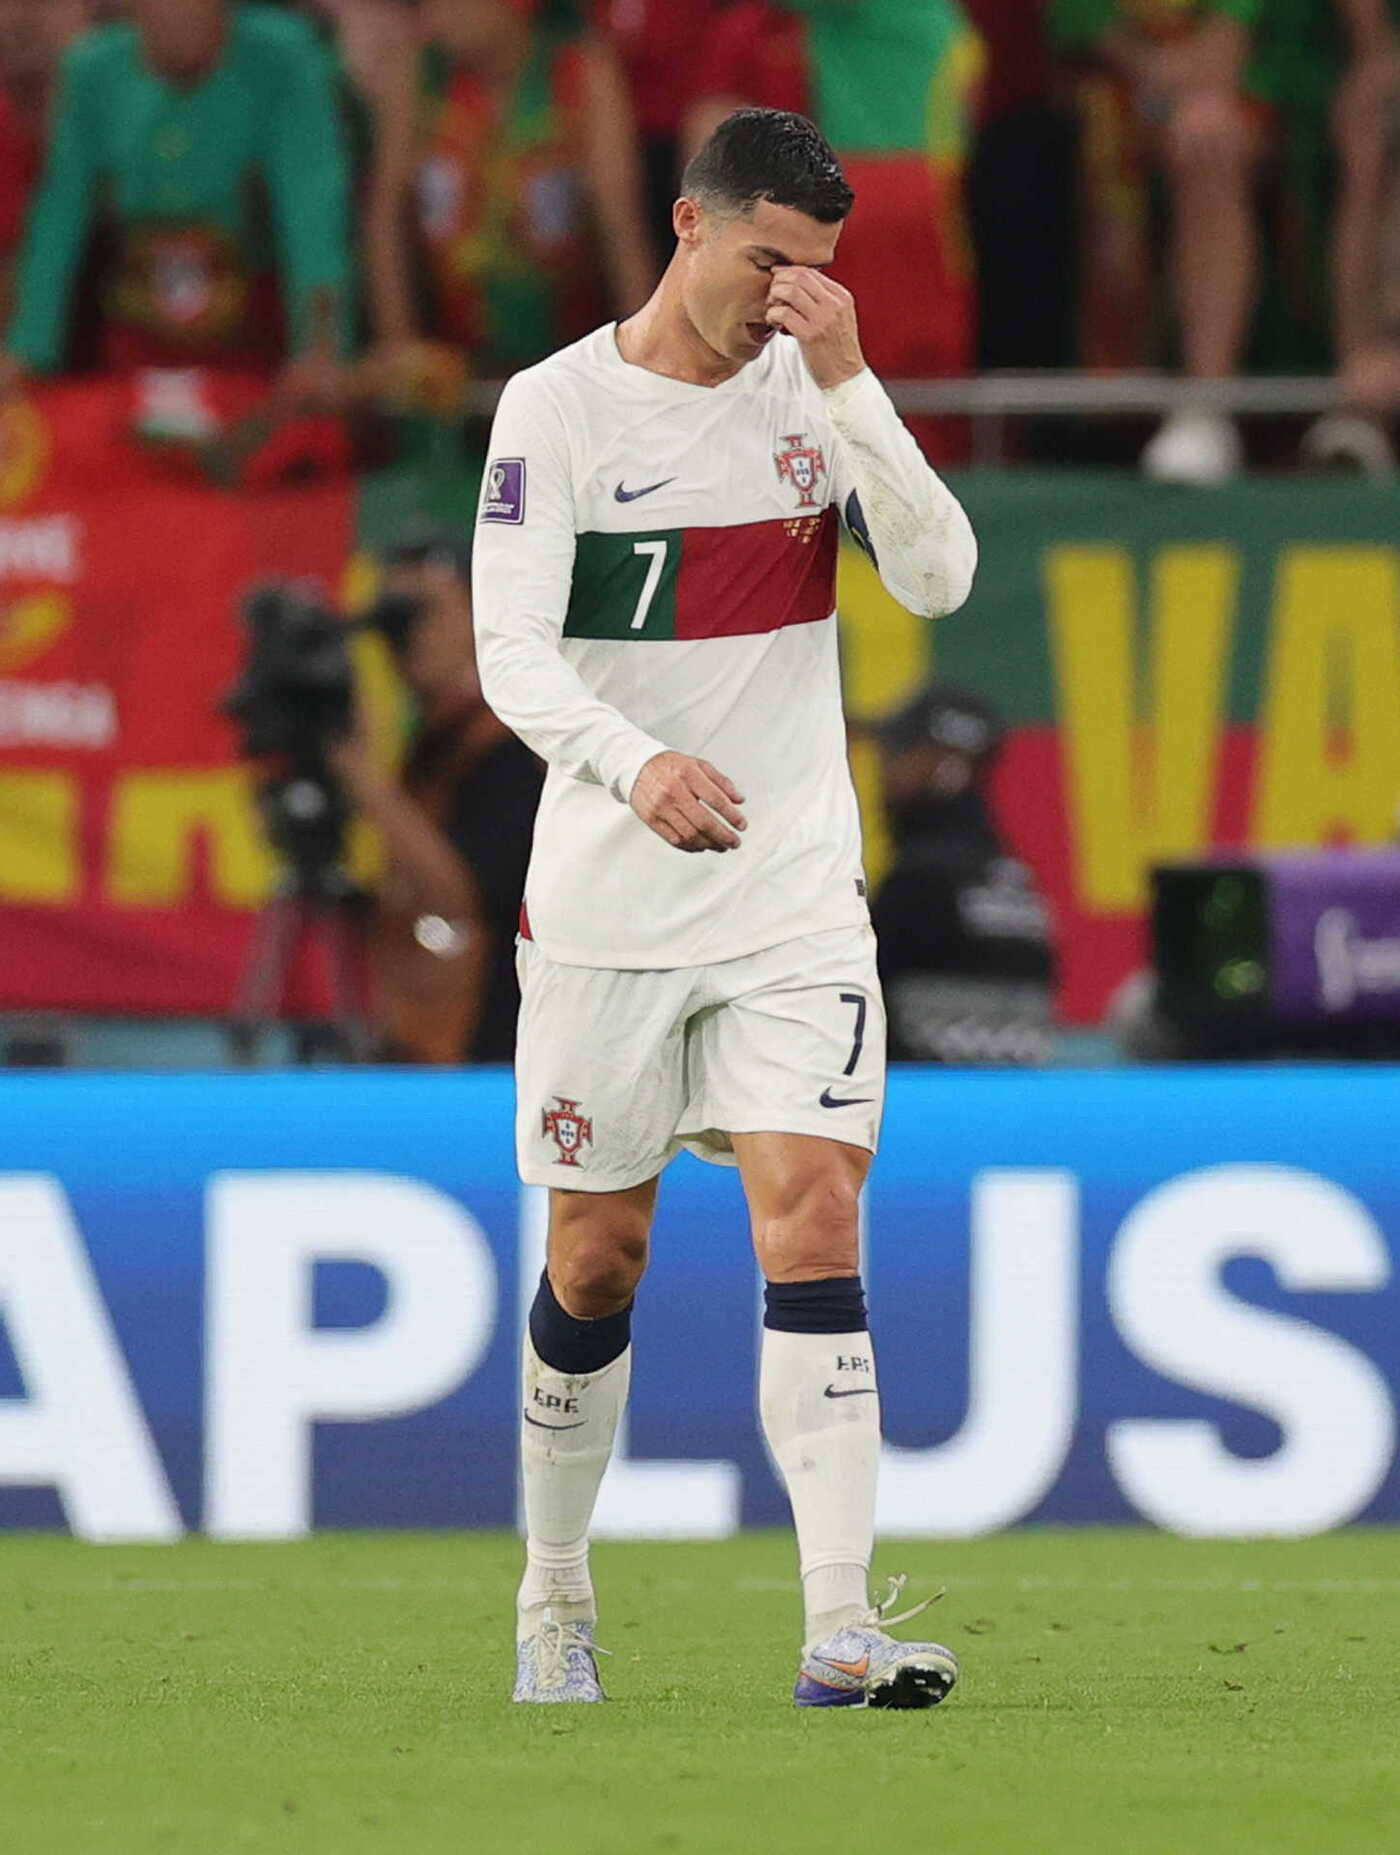 Ronaldo, bị loại, World Cup 2022, khóc: Đây là lần đầu tiên Ronaldo không thể giúp đội tuyển của mình tiến đến World Cup. Hình ảnh của anh ấy lúc này đầy gợi cảm xúc và xúc động. Xem ngay để cảm nhận rõ nhất!